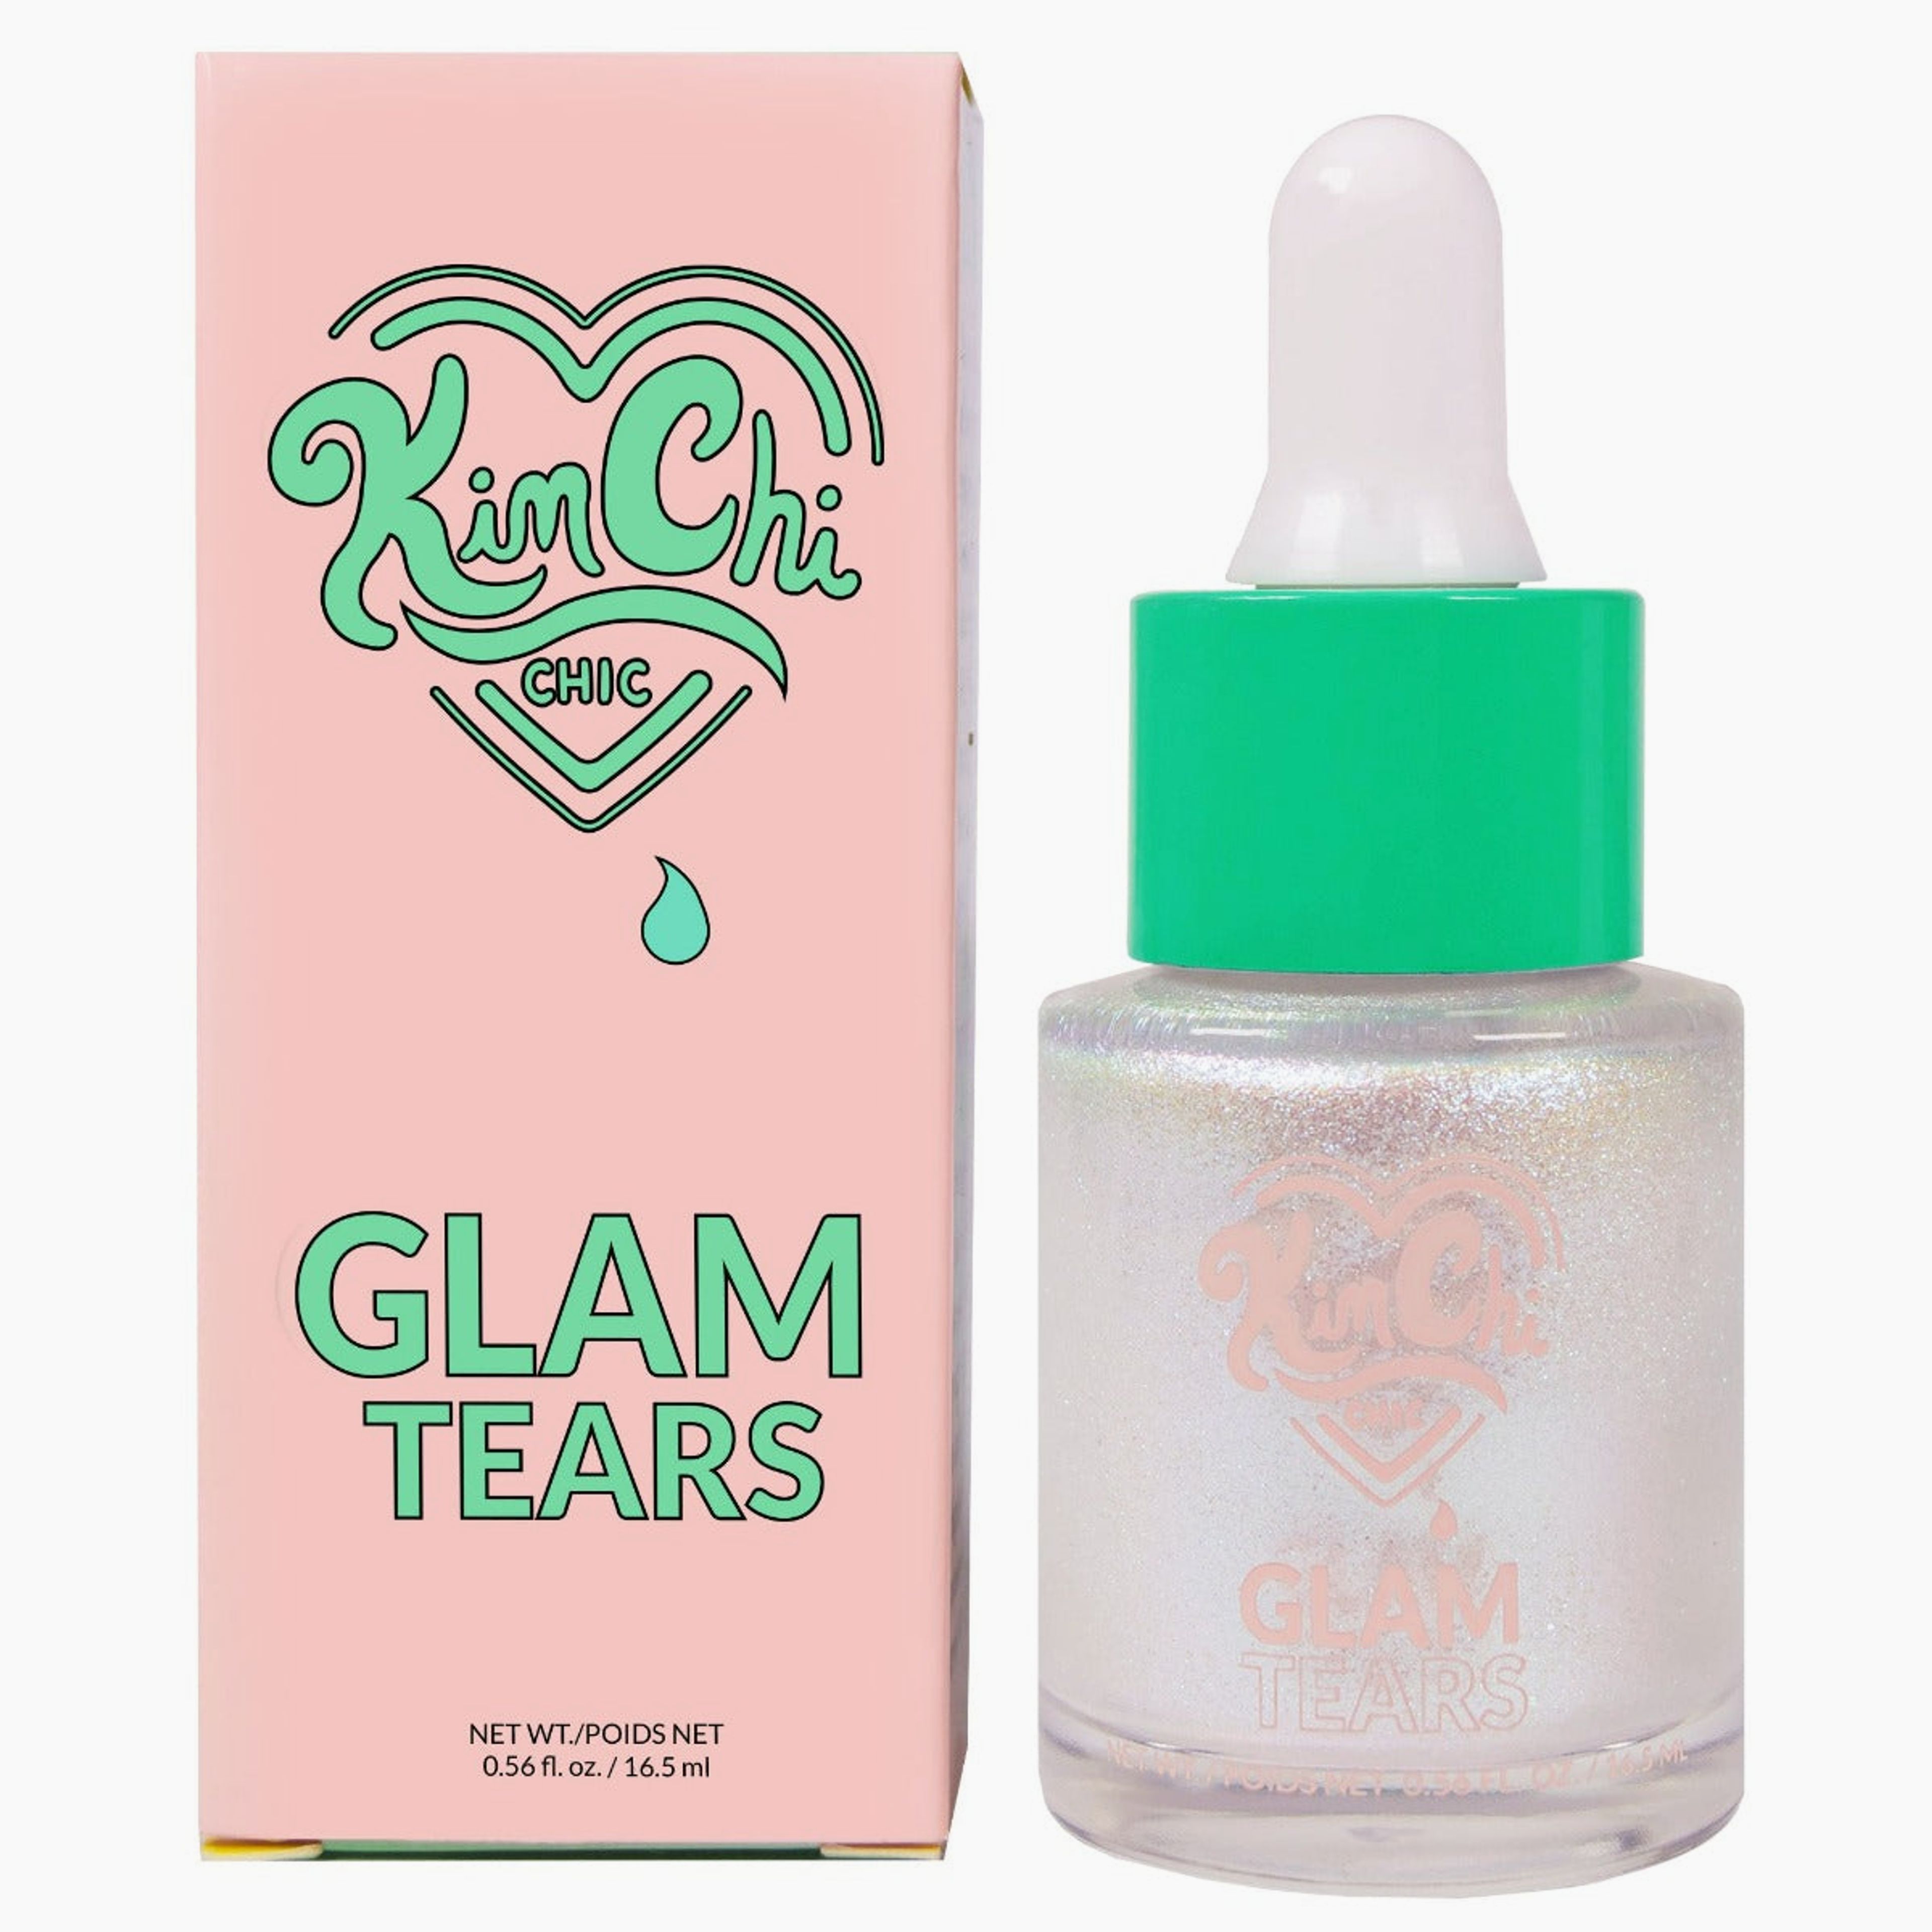 GLAM TEARS ALL OVER LIQUID HIGHLIGHTER - 03 Opal